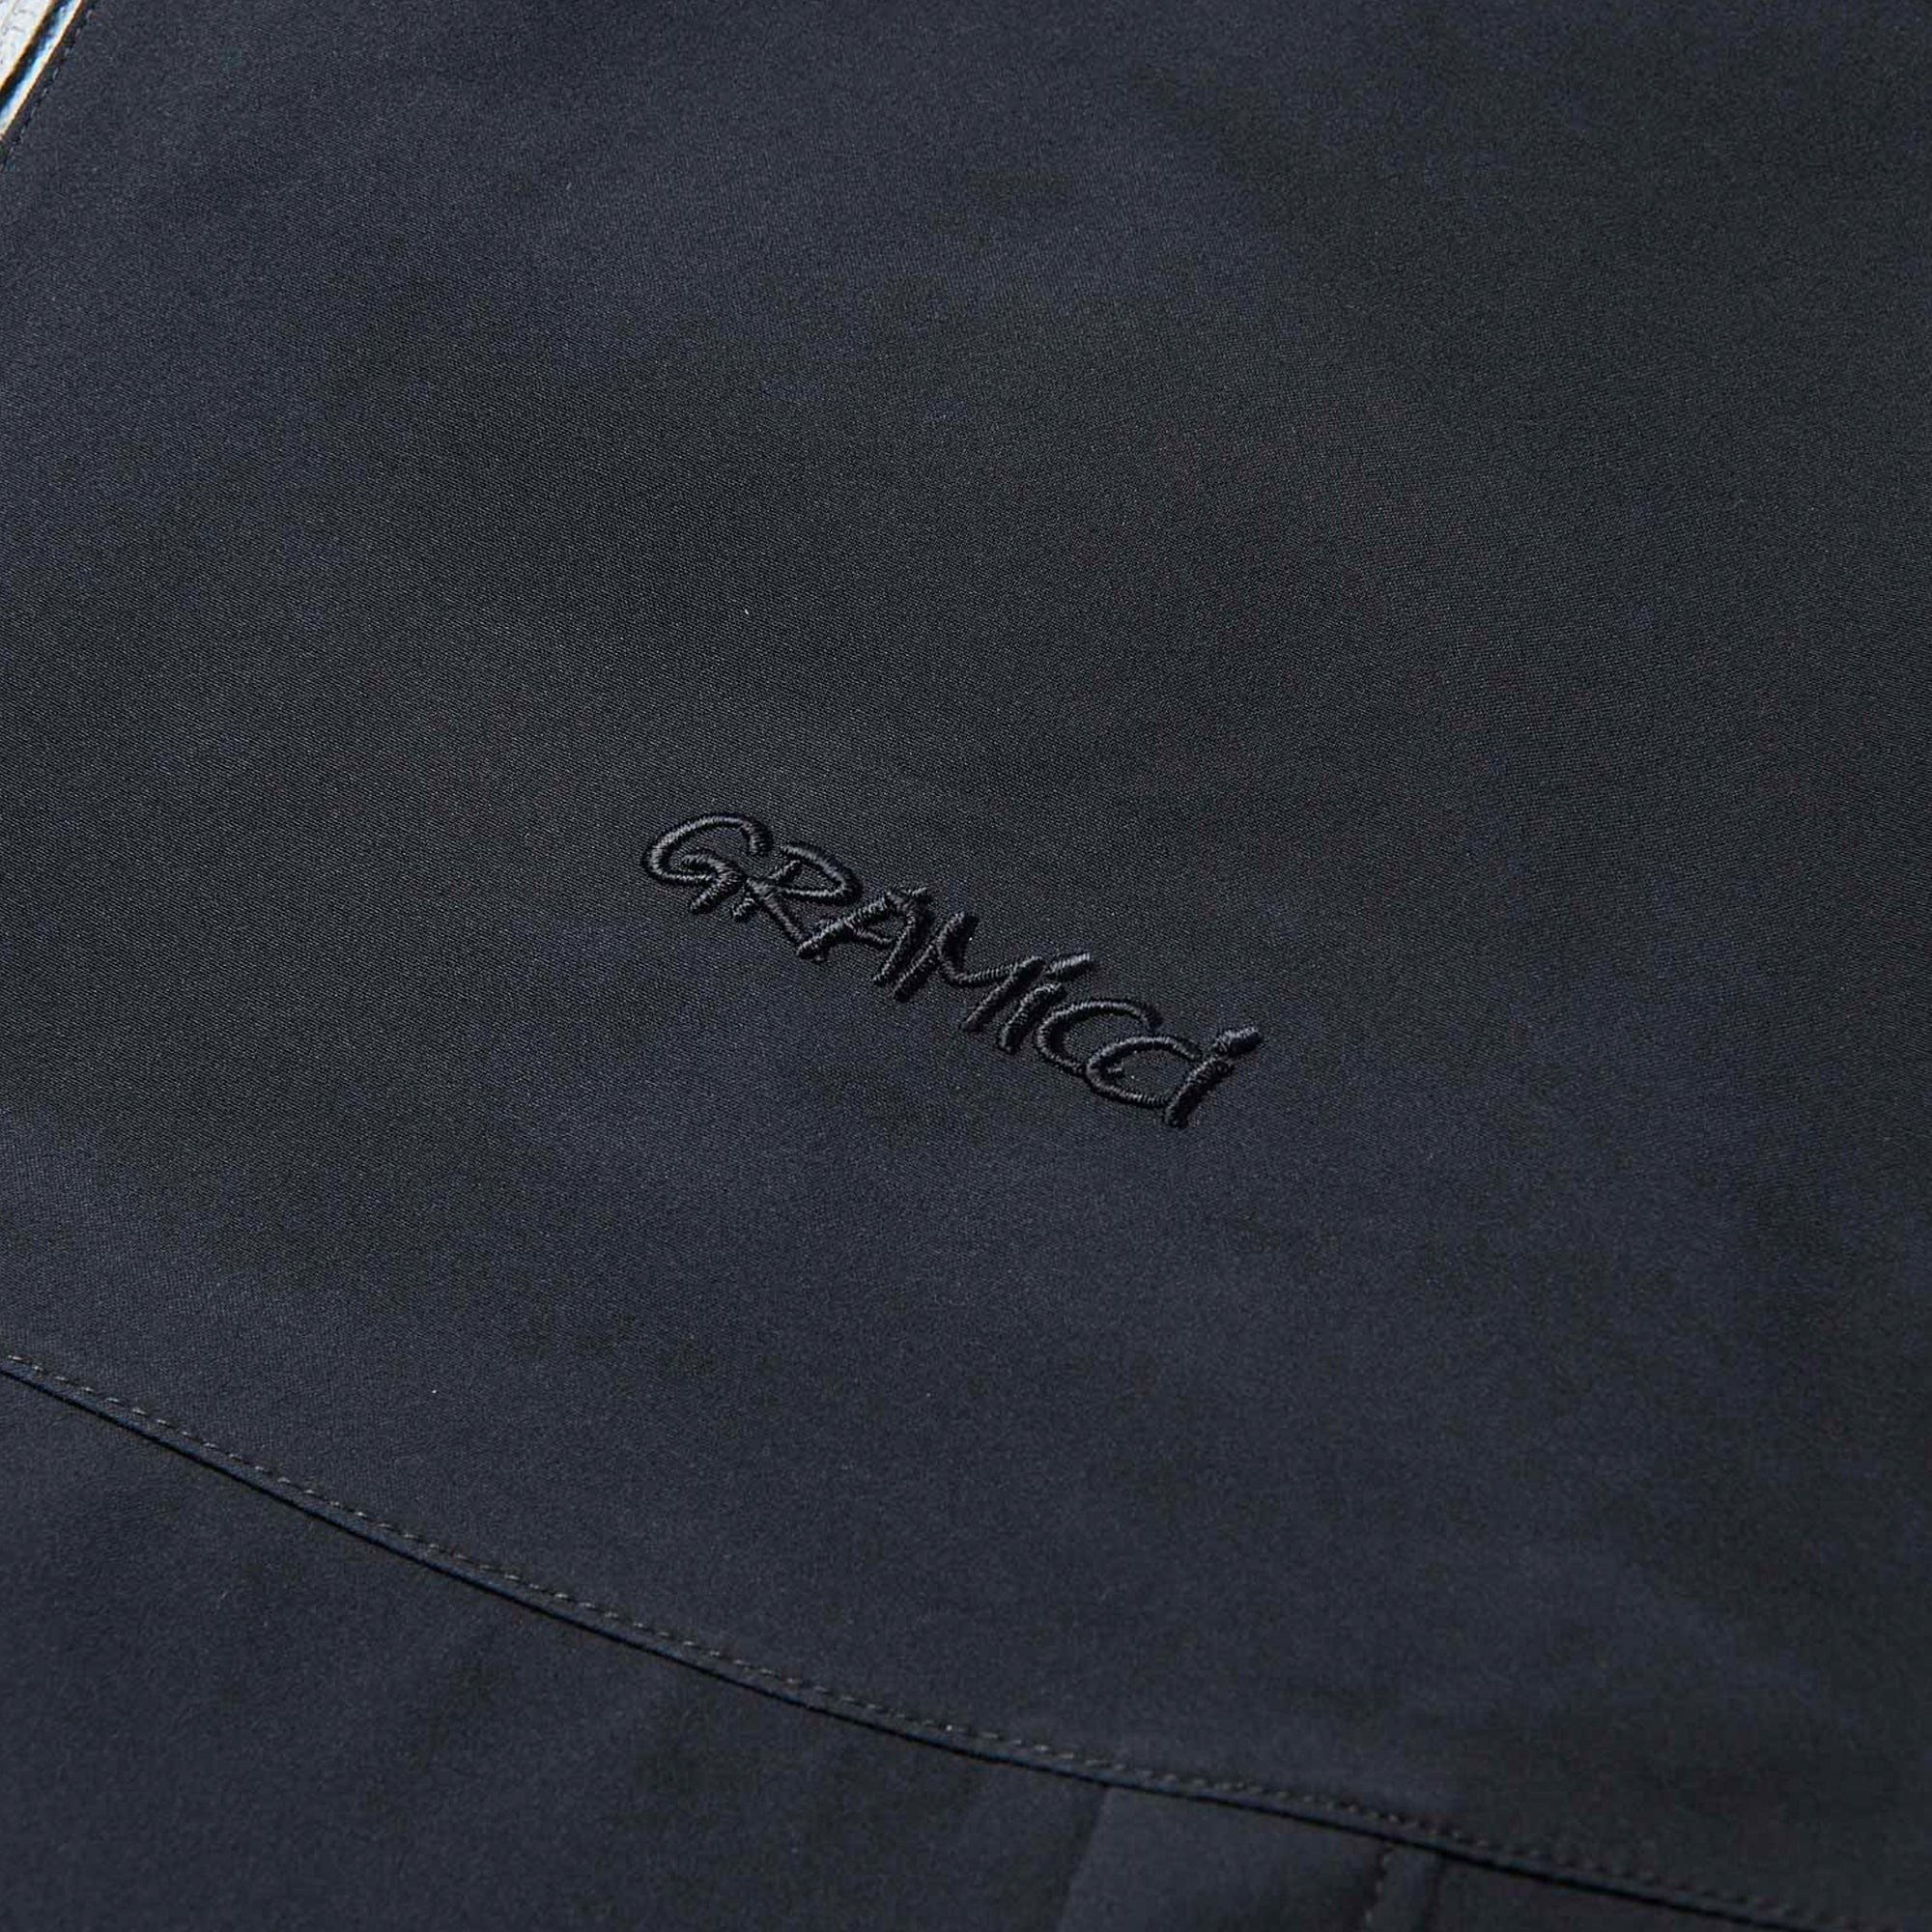 Gramicci Waterproof Hooded Jacket - Black